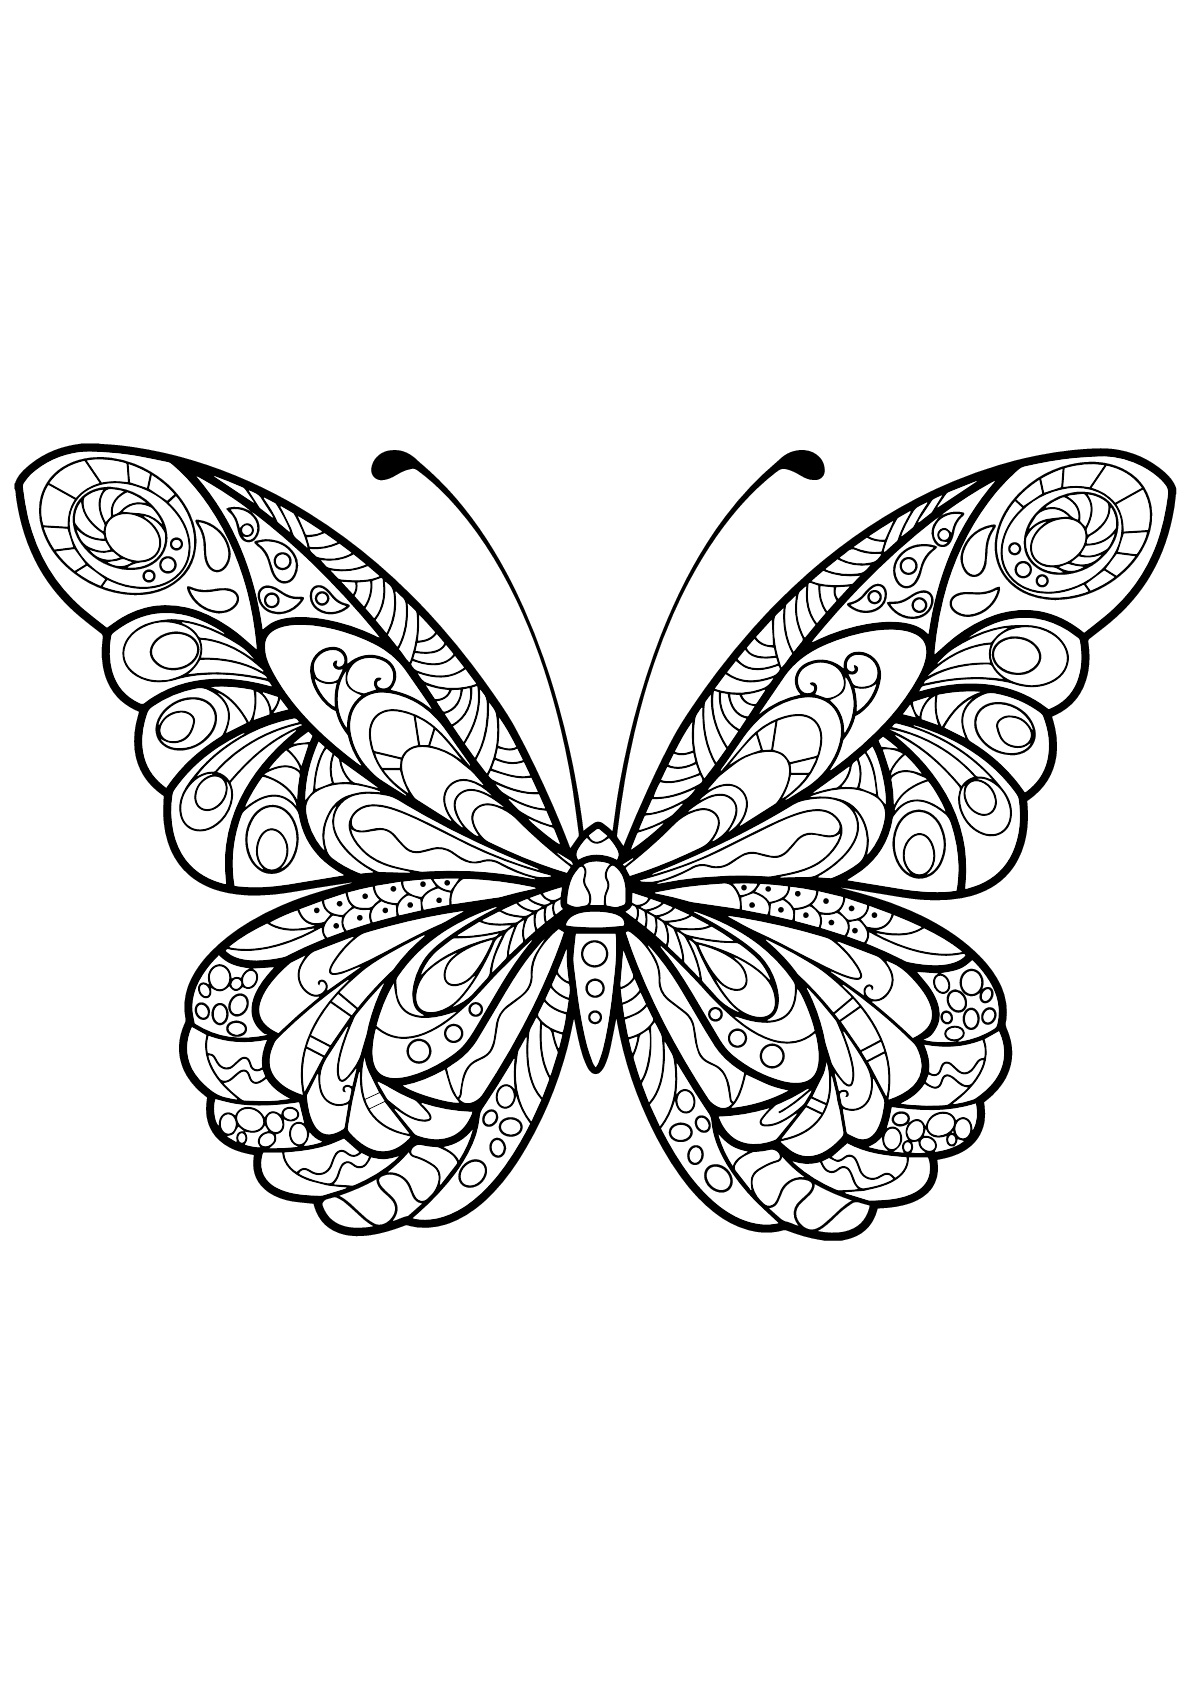 Coloriage De Papillons Pour Enfants - Coloriages De Papillons Pour Enfants destiné Dessin Papillon À Imprimer